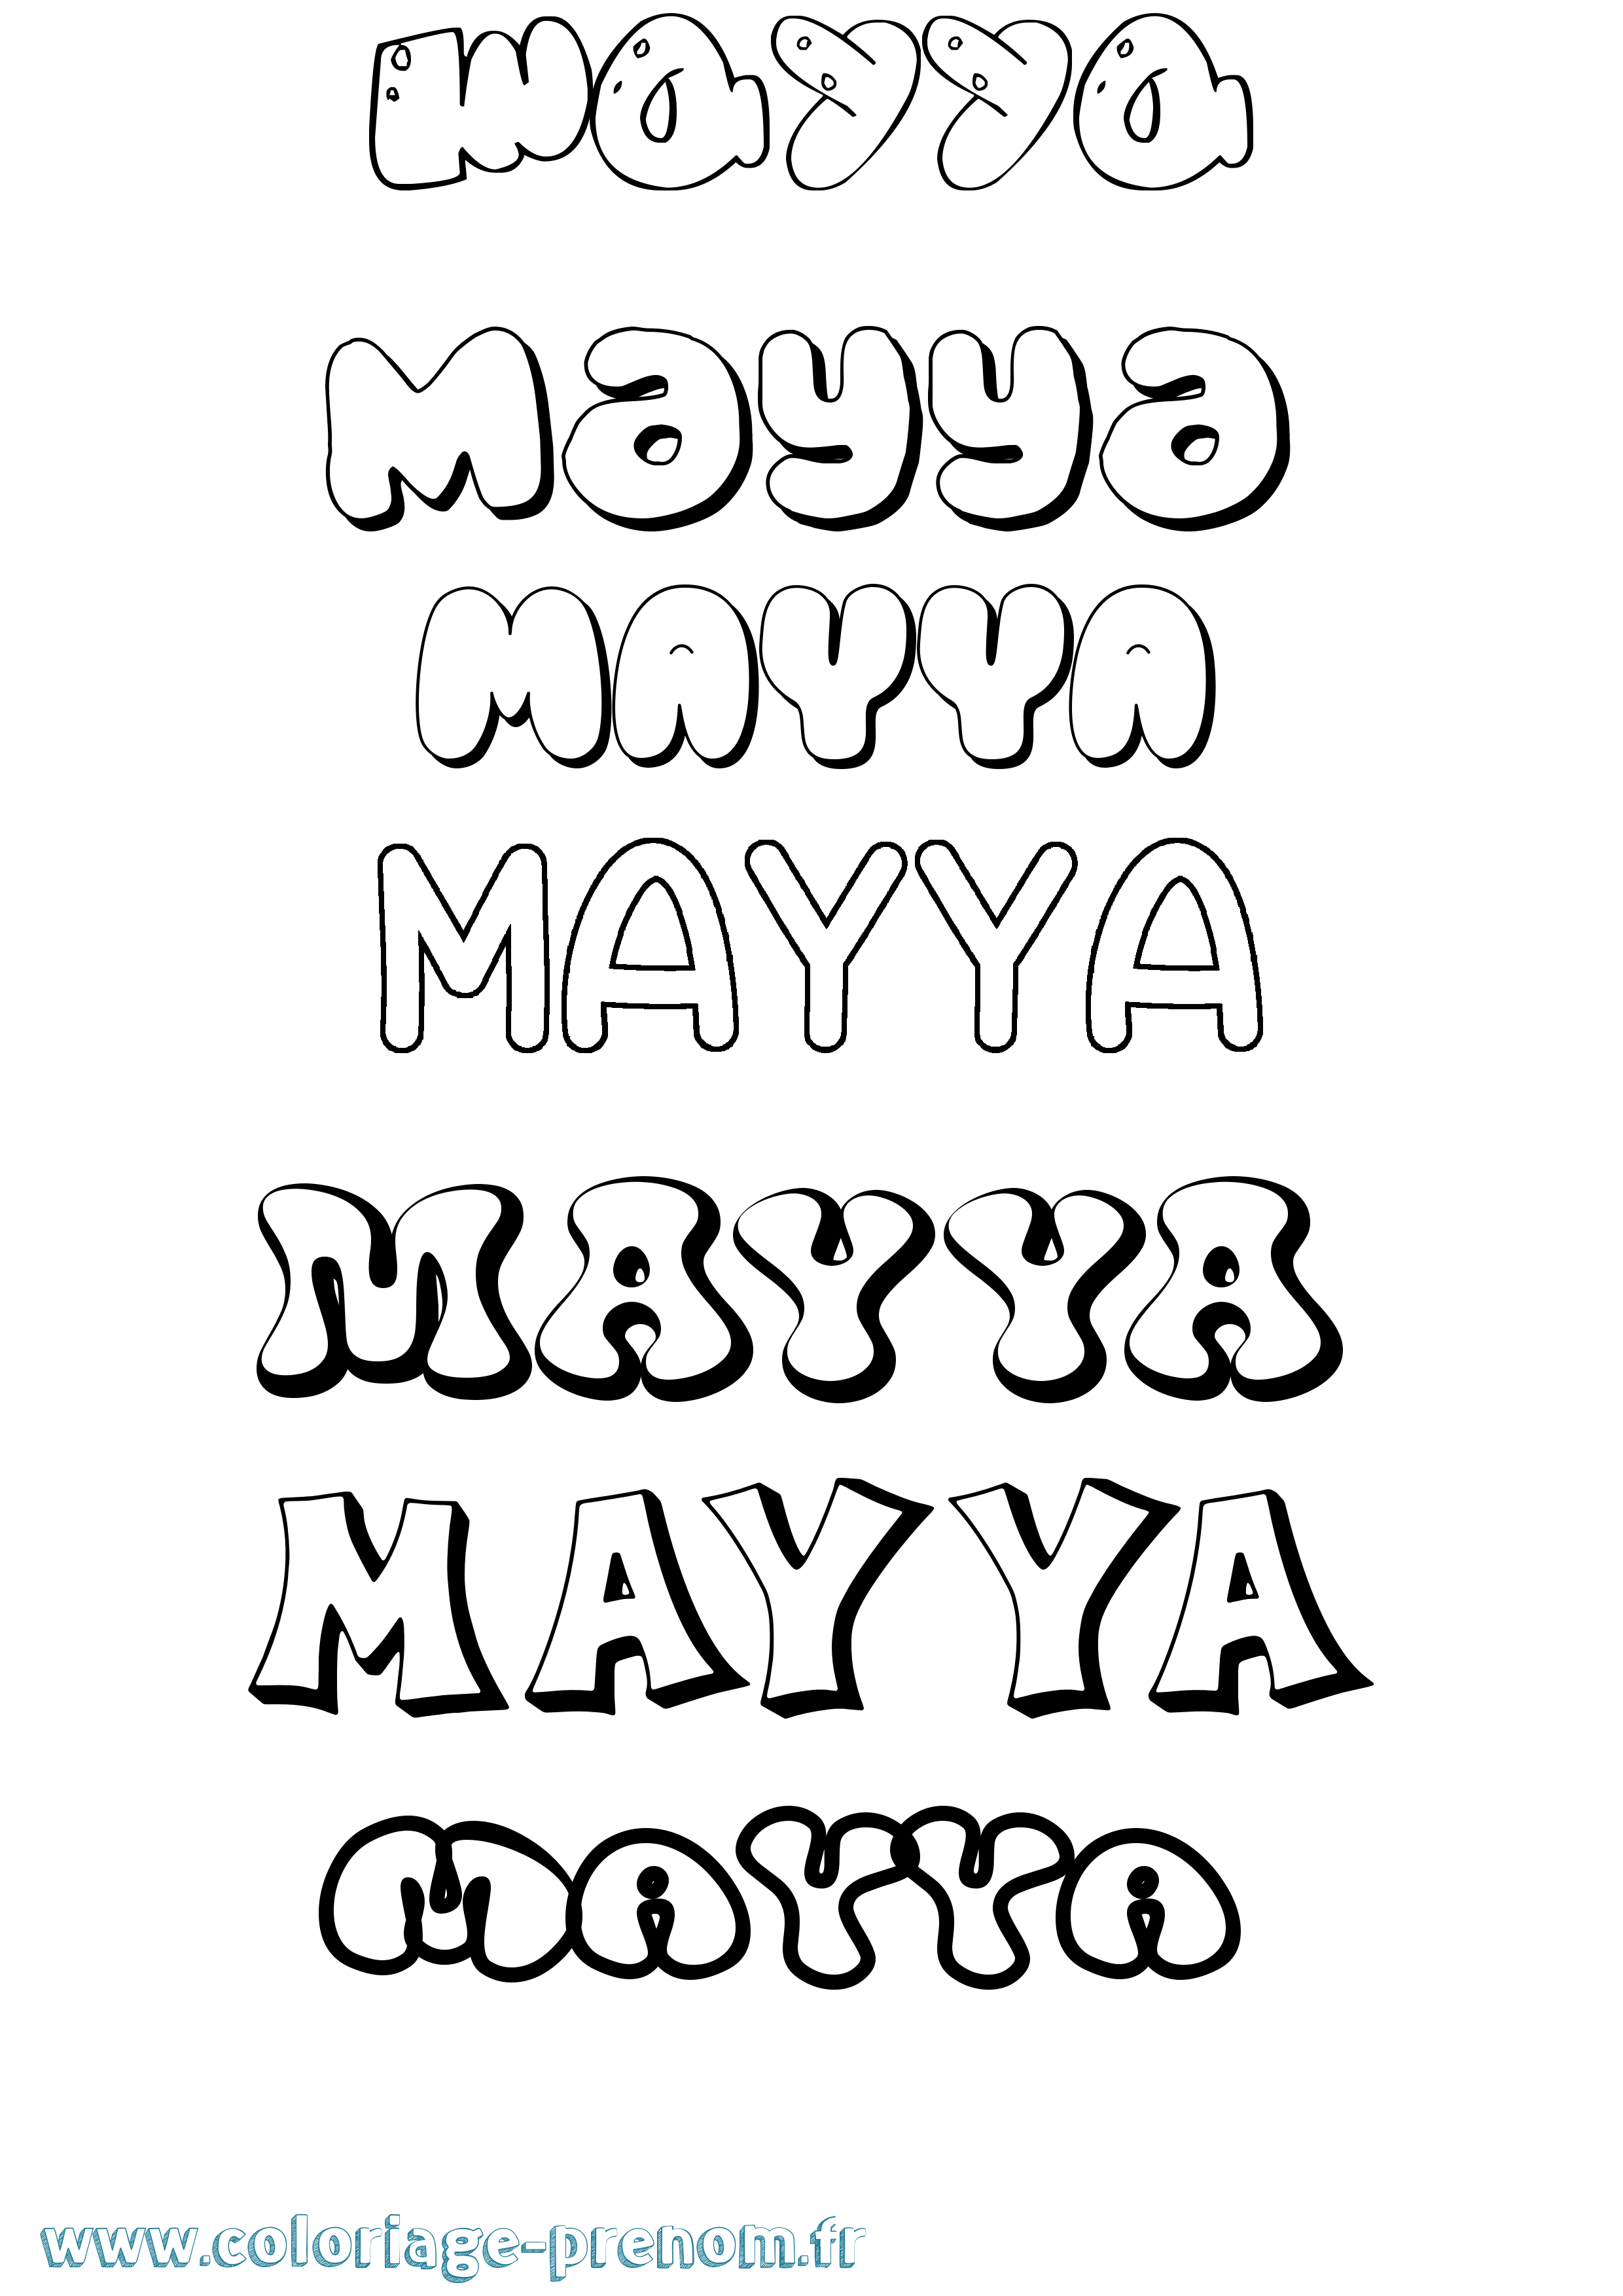 Coloriage prénom Mayya Bubble